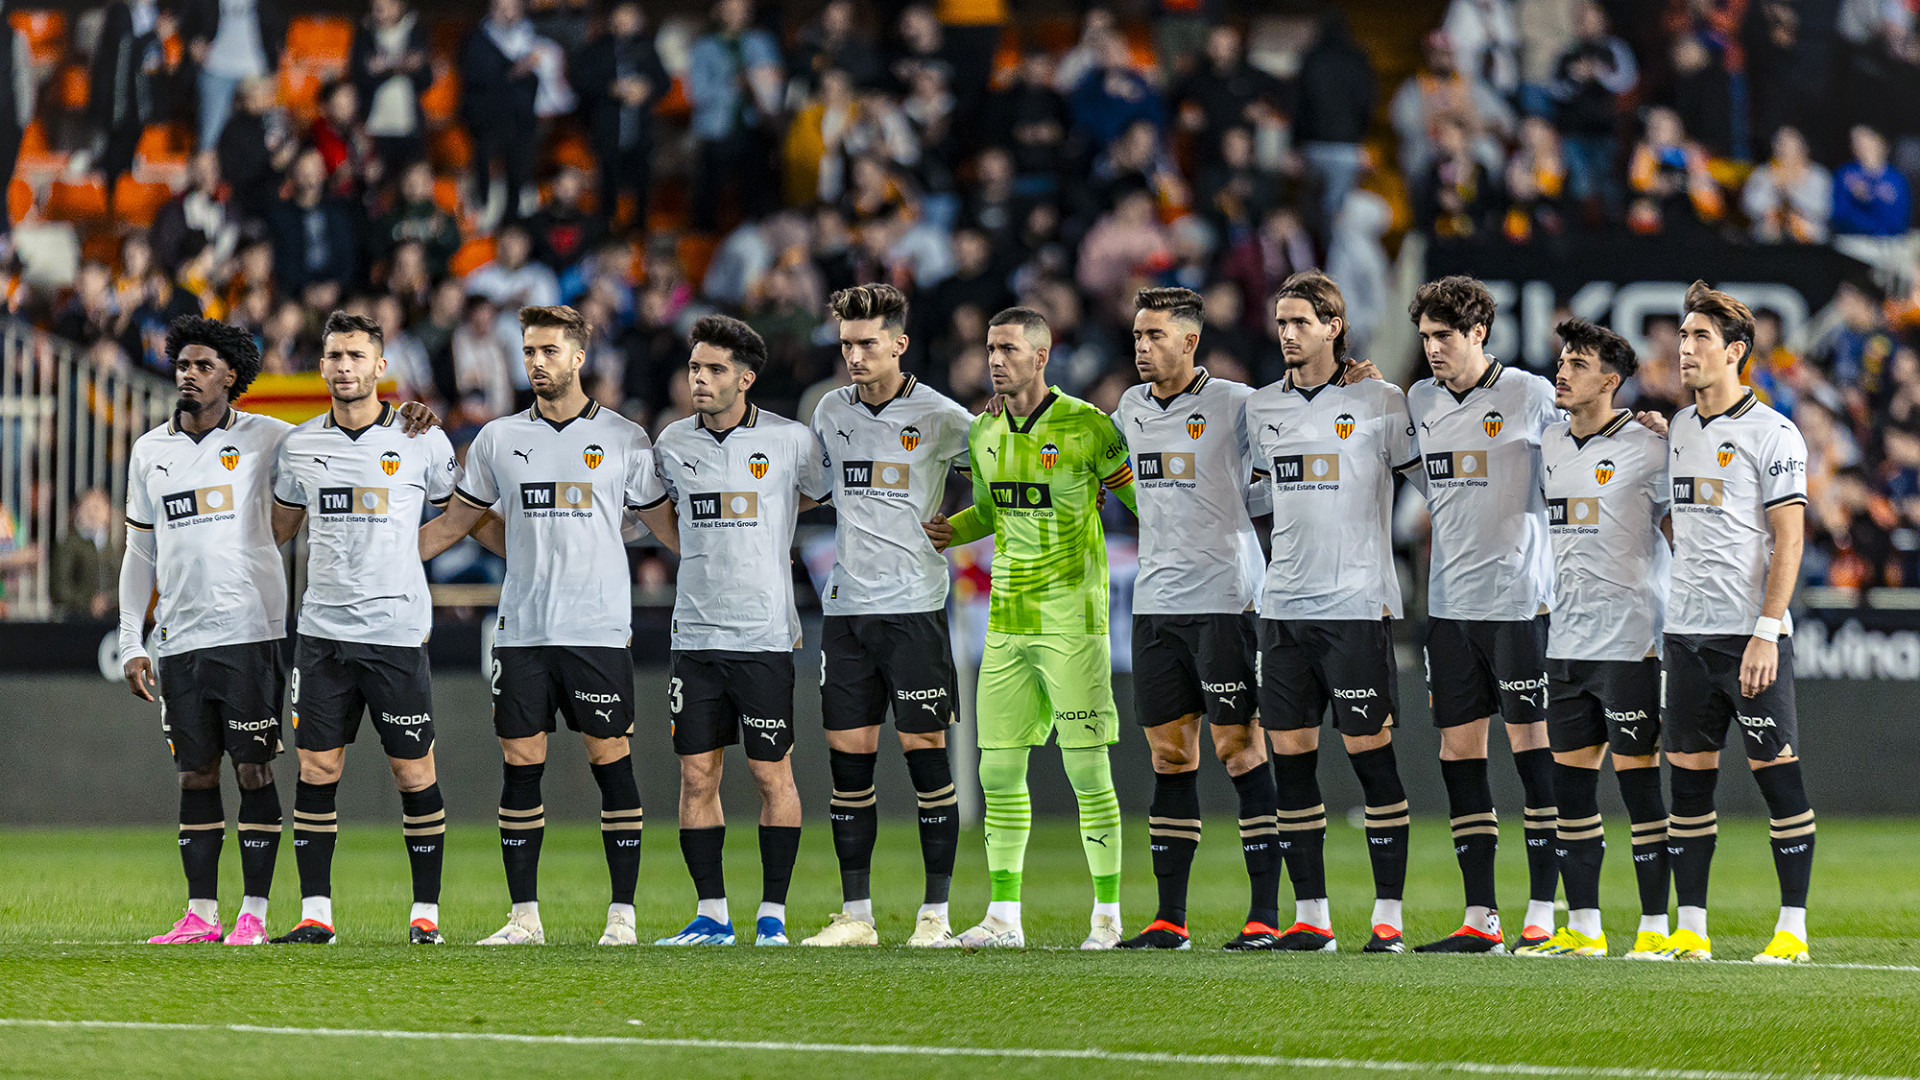 El Valencia CF es el club, de entre las 5 grandes ligas, que más jugadores  NACIONALES sub-23 utiliza en sus XI iniciales - Valencia CF